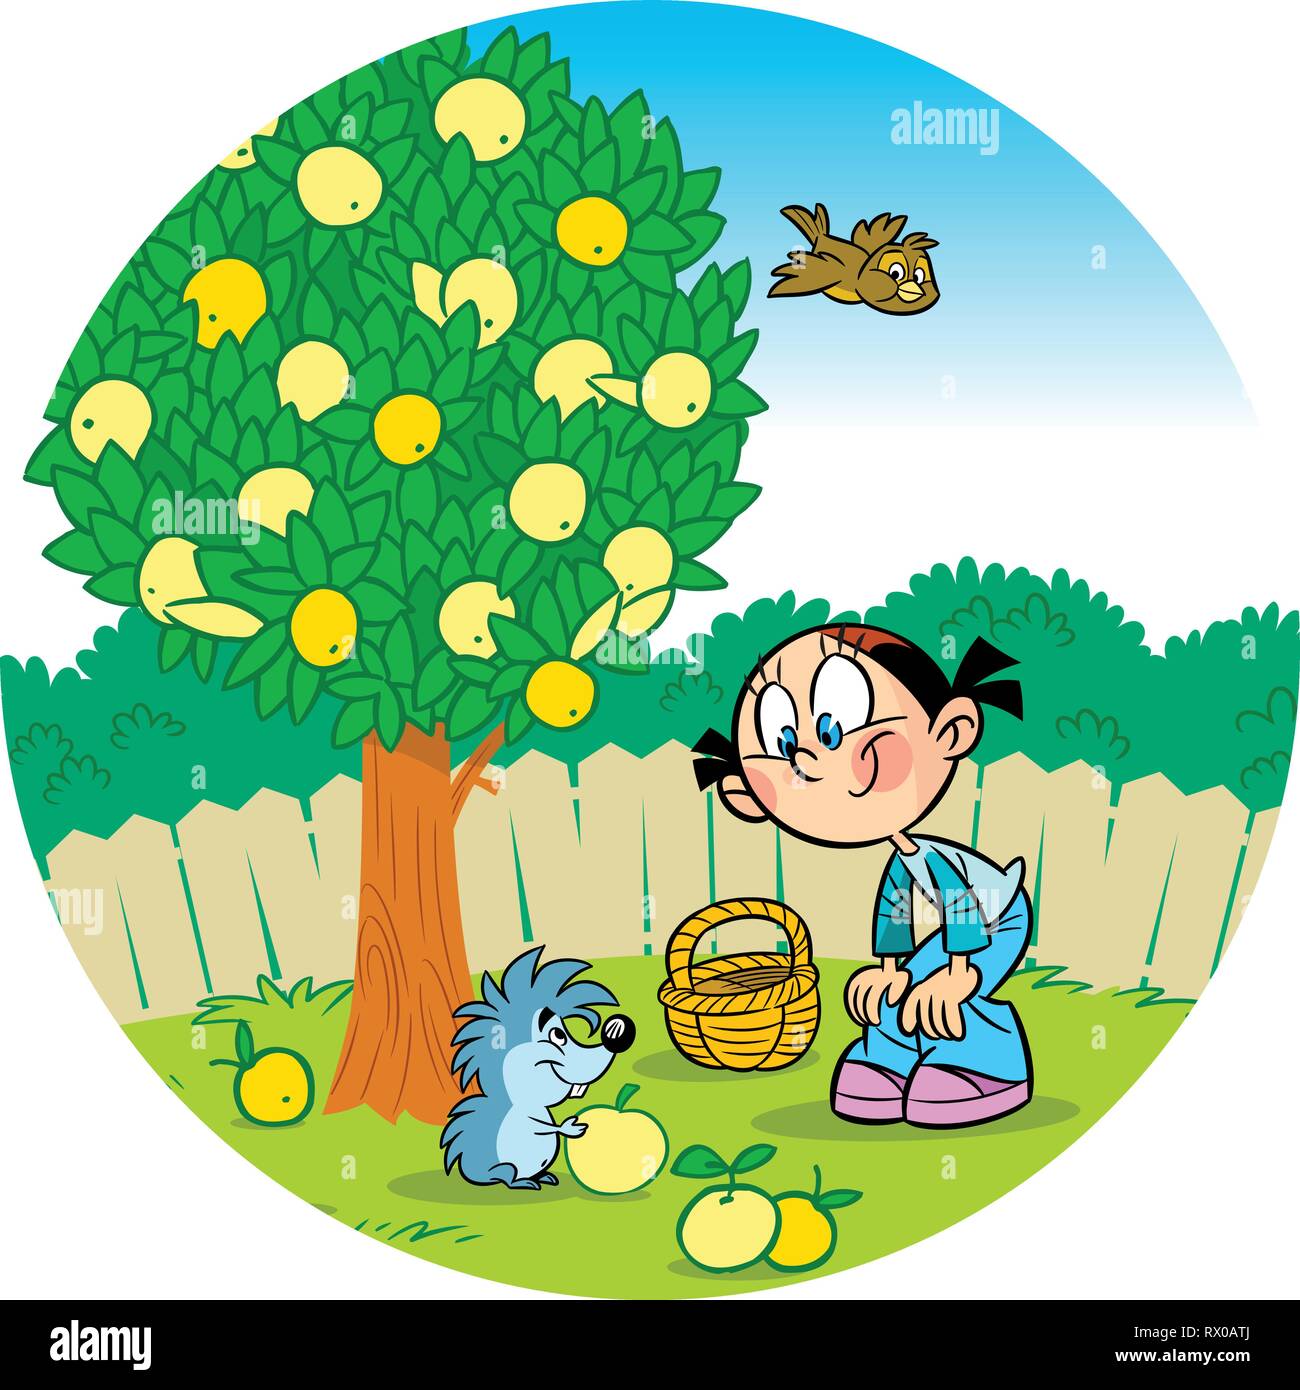 Die Abbildung zeigt ein Mädchen, das Im Garten arbeiten. Kleine lustige Igel hilft Ihr pick Äpfel. Abbildung im Cartoon Stil. Stock Vektor